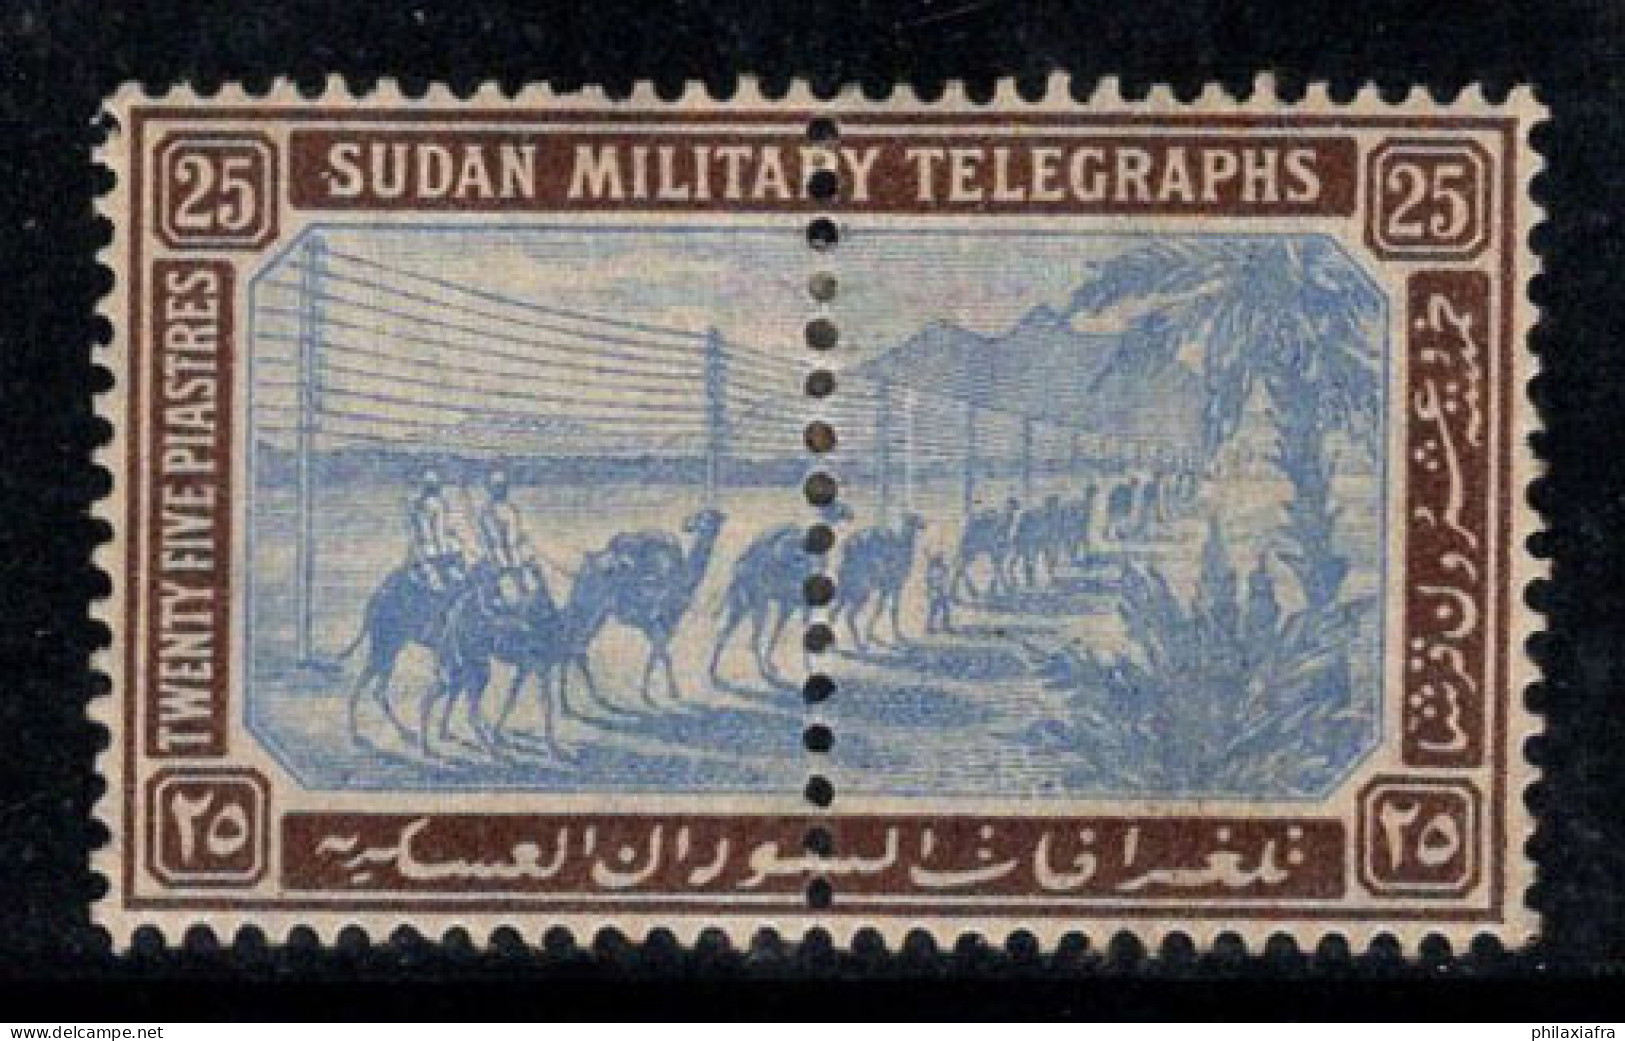 Soudan 1898 Neuf * MH 100% Télégraphe Militaire, 25 P - Soudan (...-1951)